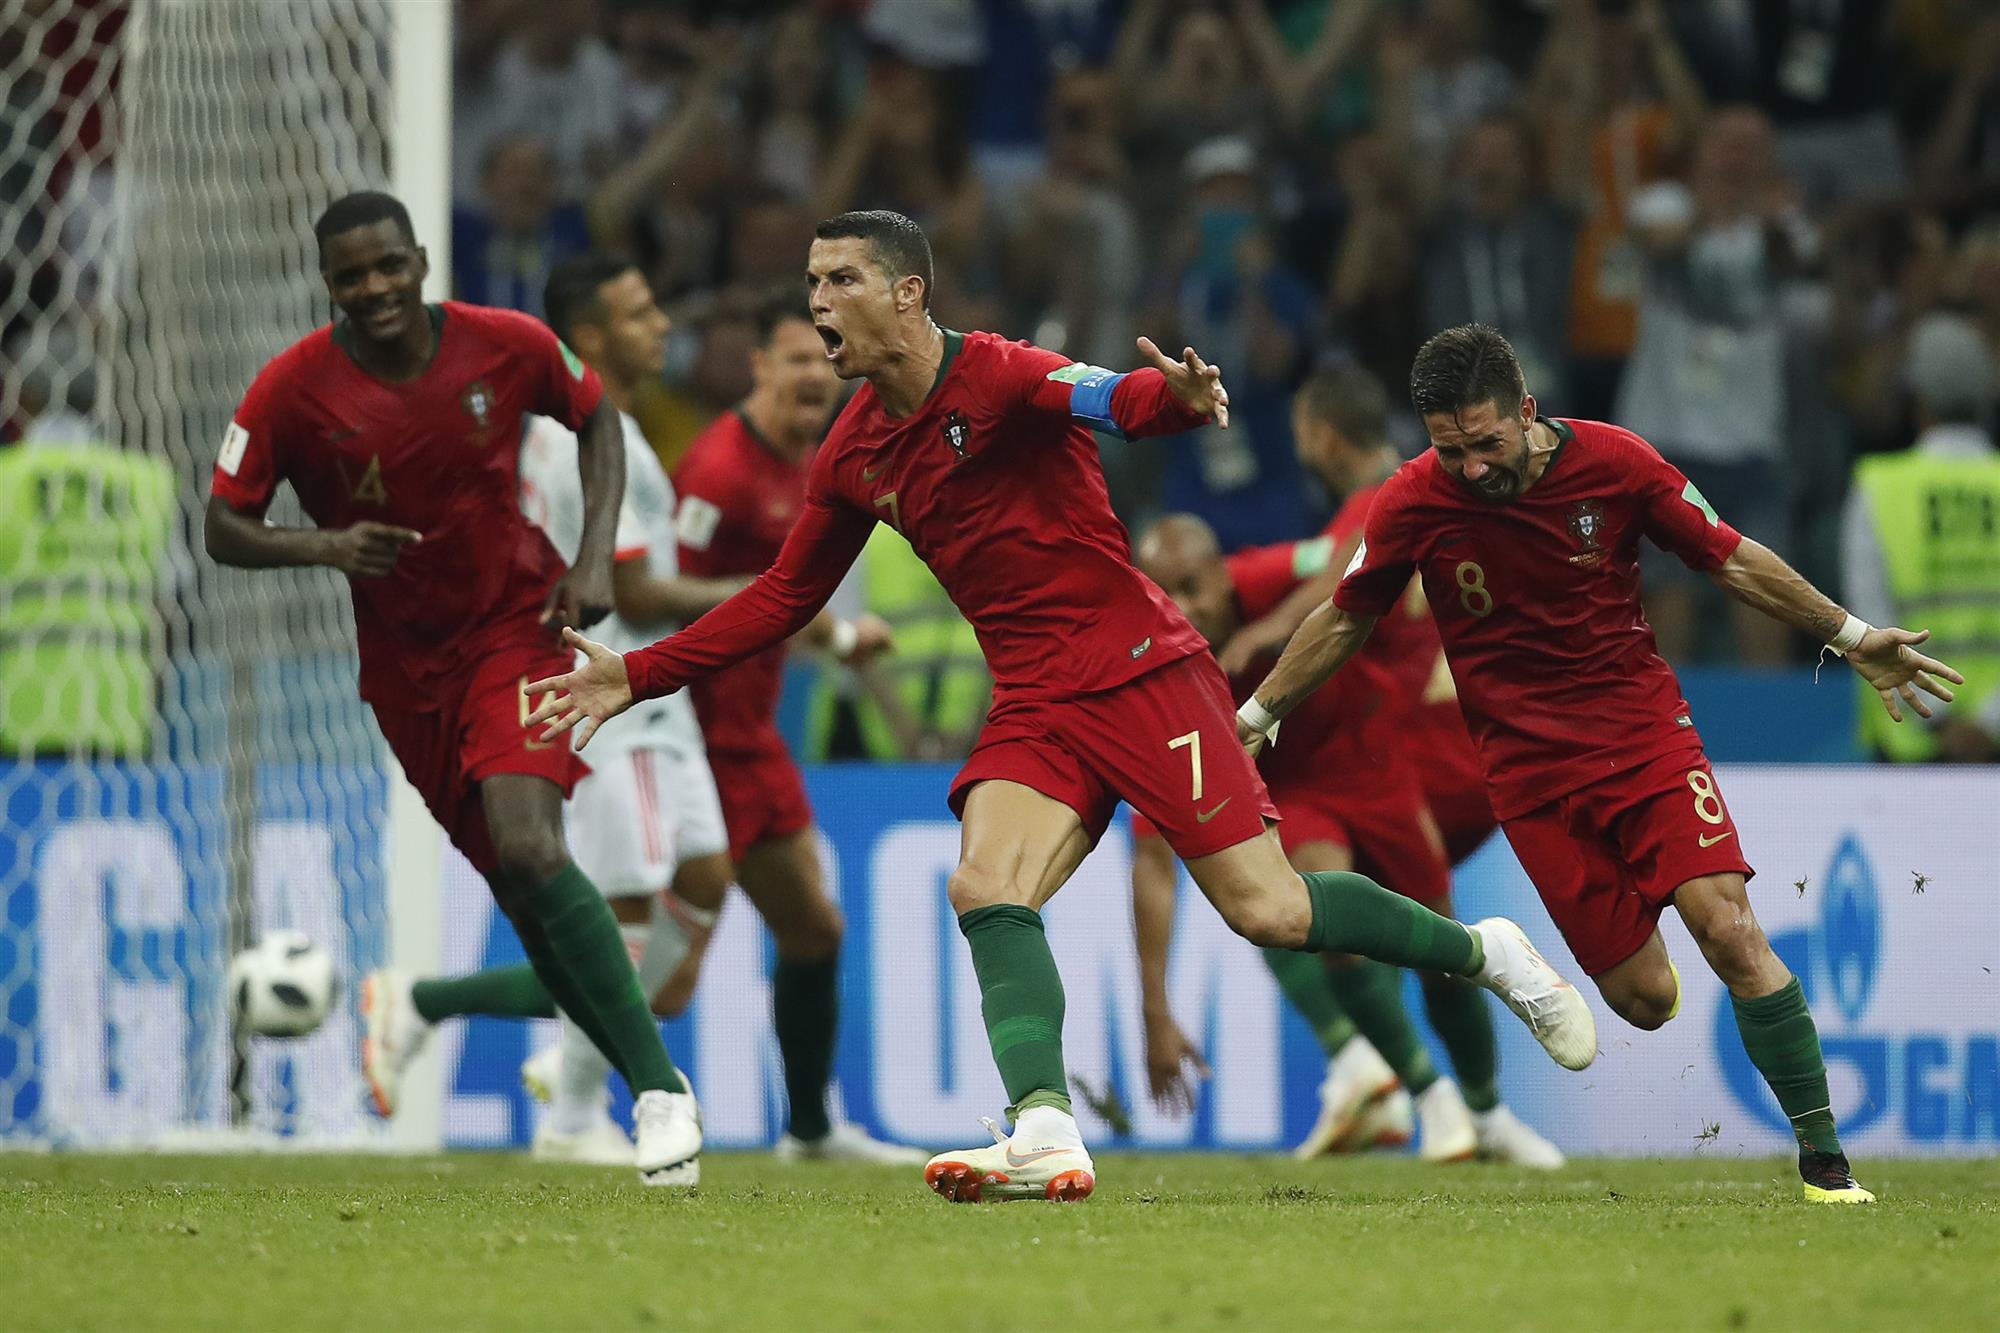 Mundial 2018. Imprensa internacional rendida a hat-trick de Ronaldo no jogo frente a Espanha